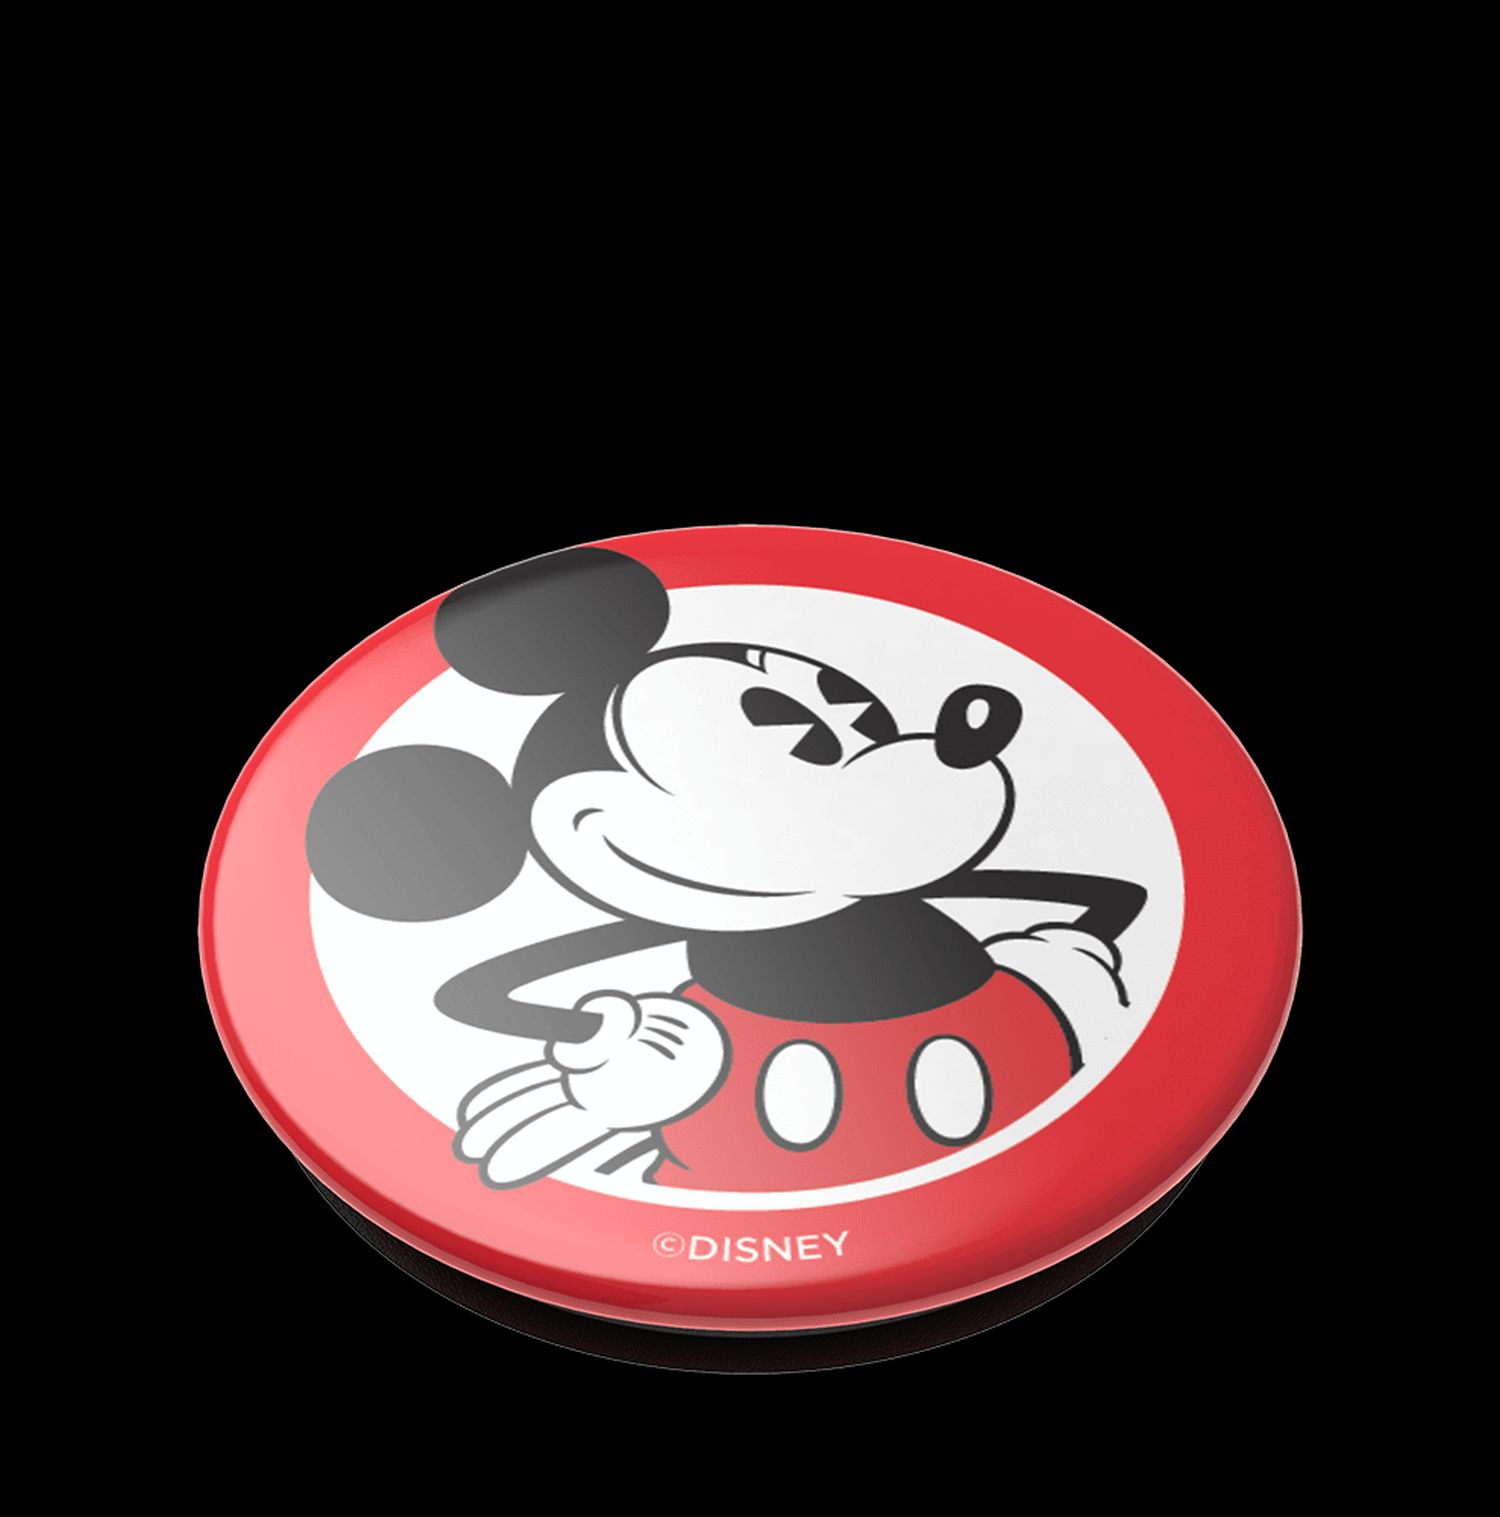 Handyhalterung, PopGrip POPSOCKETS Rot/Schwarz/Weiß Classic Mickey